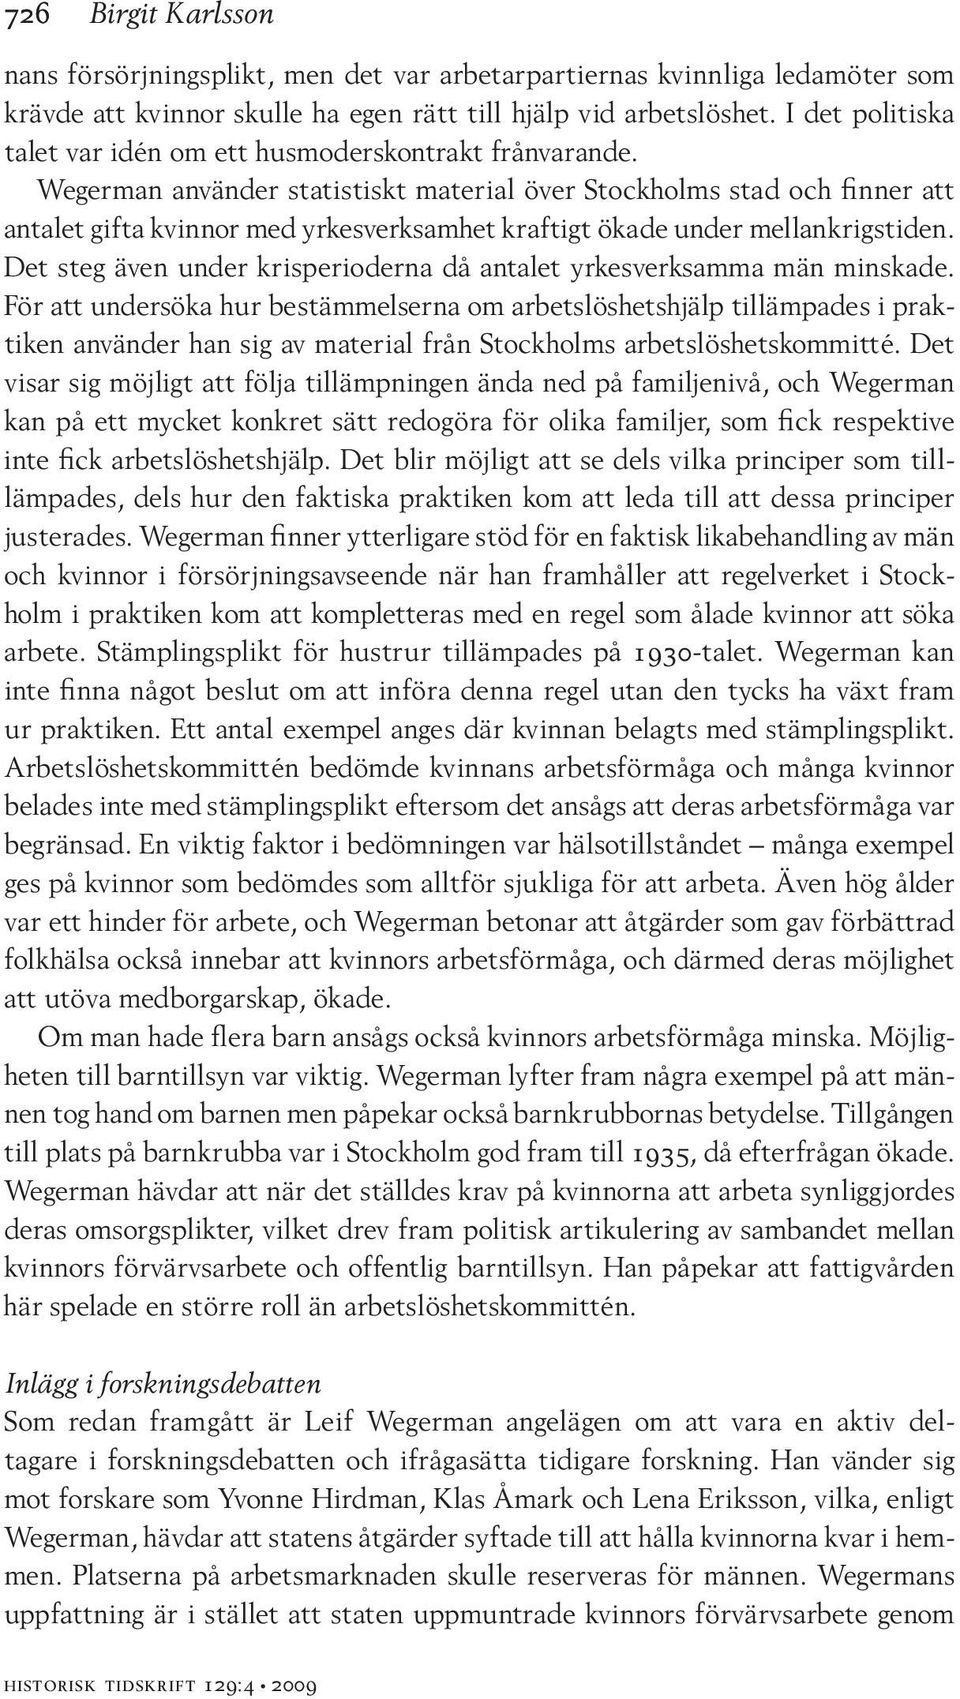 Wegerman använder statistiskt material över Stockholms stad och finner att antalet gifta kvinnor med yrkesverksamhet kraftigt ökade under mellankrigstiden.